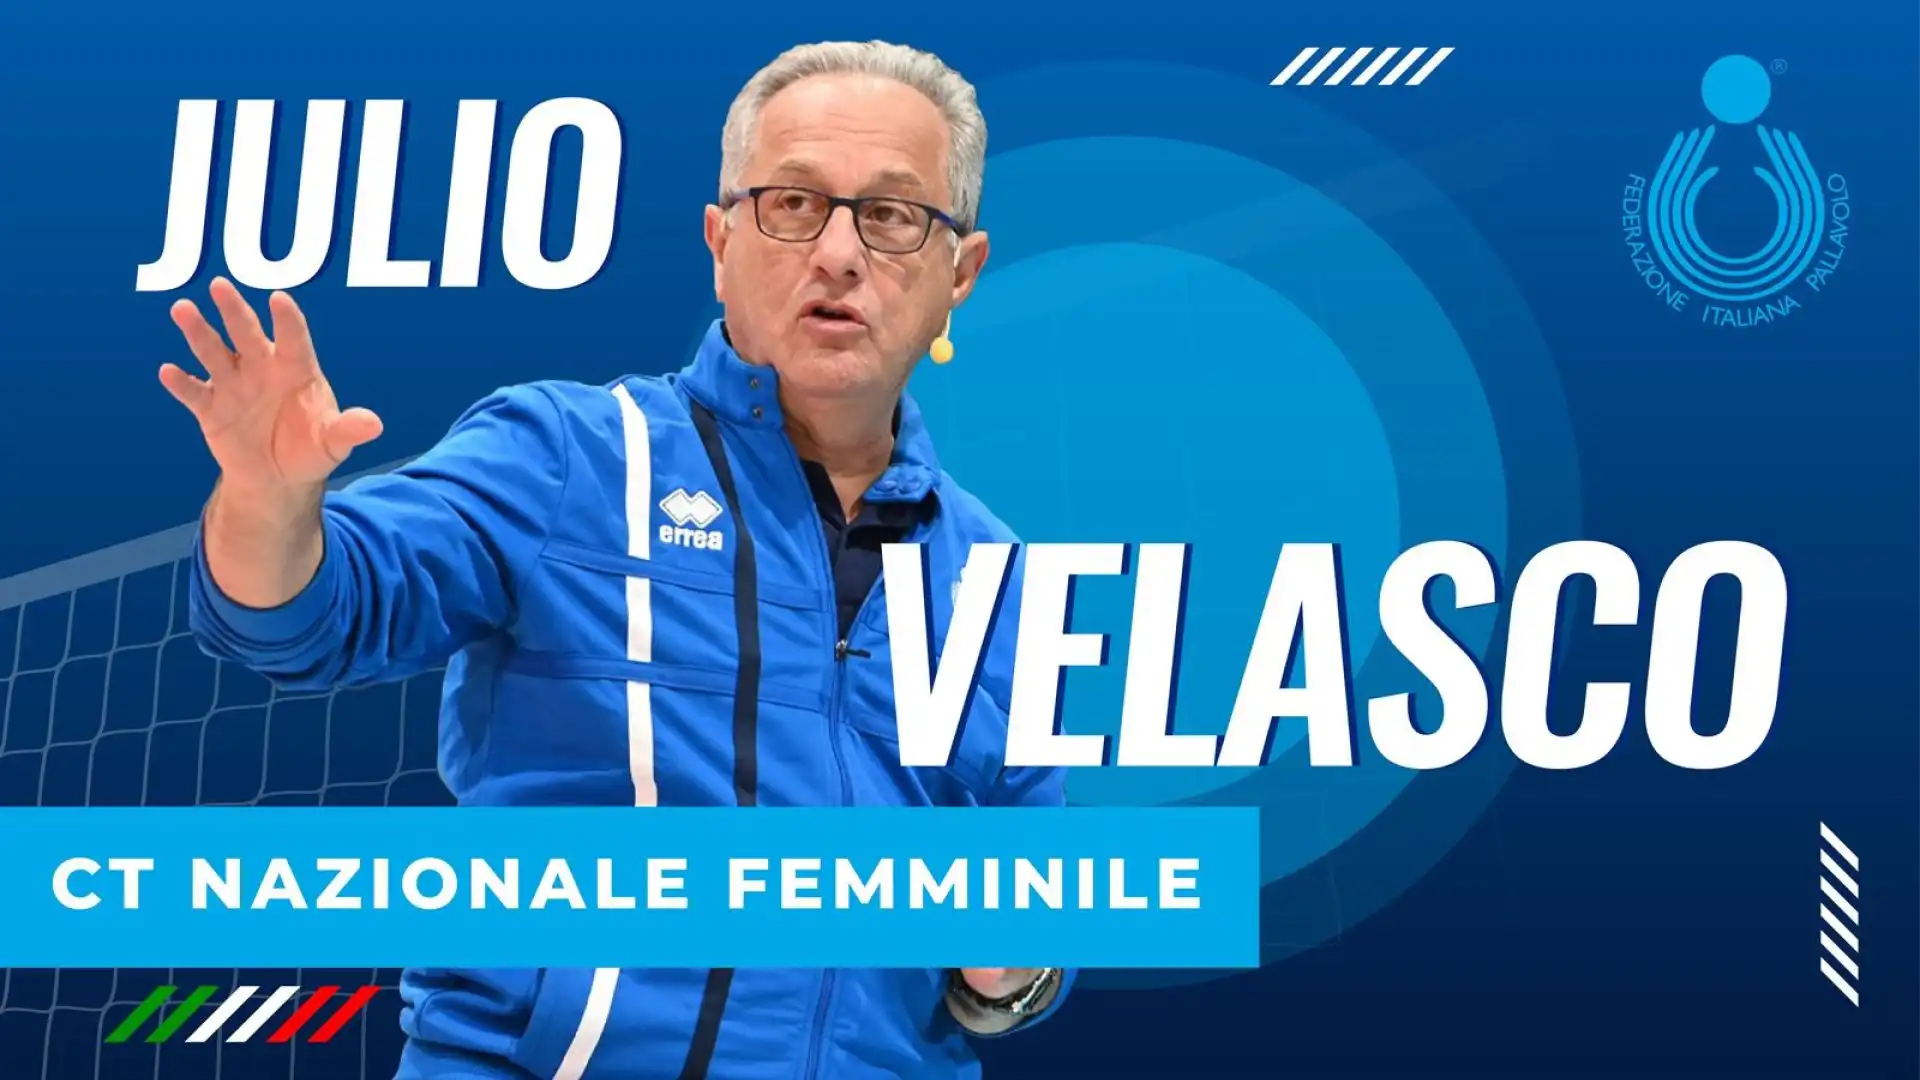 Dal 1° gennaio 2024 Velasco sarà ct dell'Italvolley femminile, raccogliendo l'eredità di Davide Mazzanti. L'obiettivo sarà qualificarsi e vincere le Olimpiadi di Parigi.